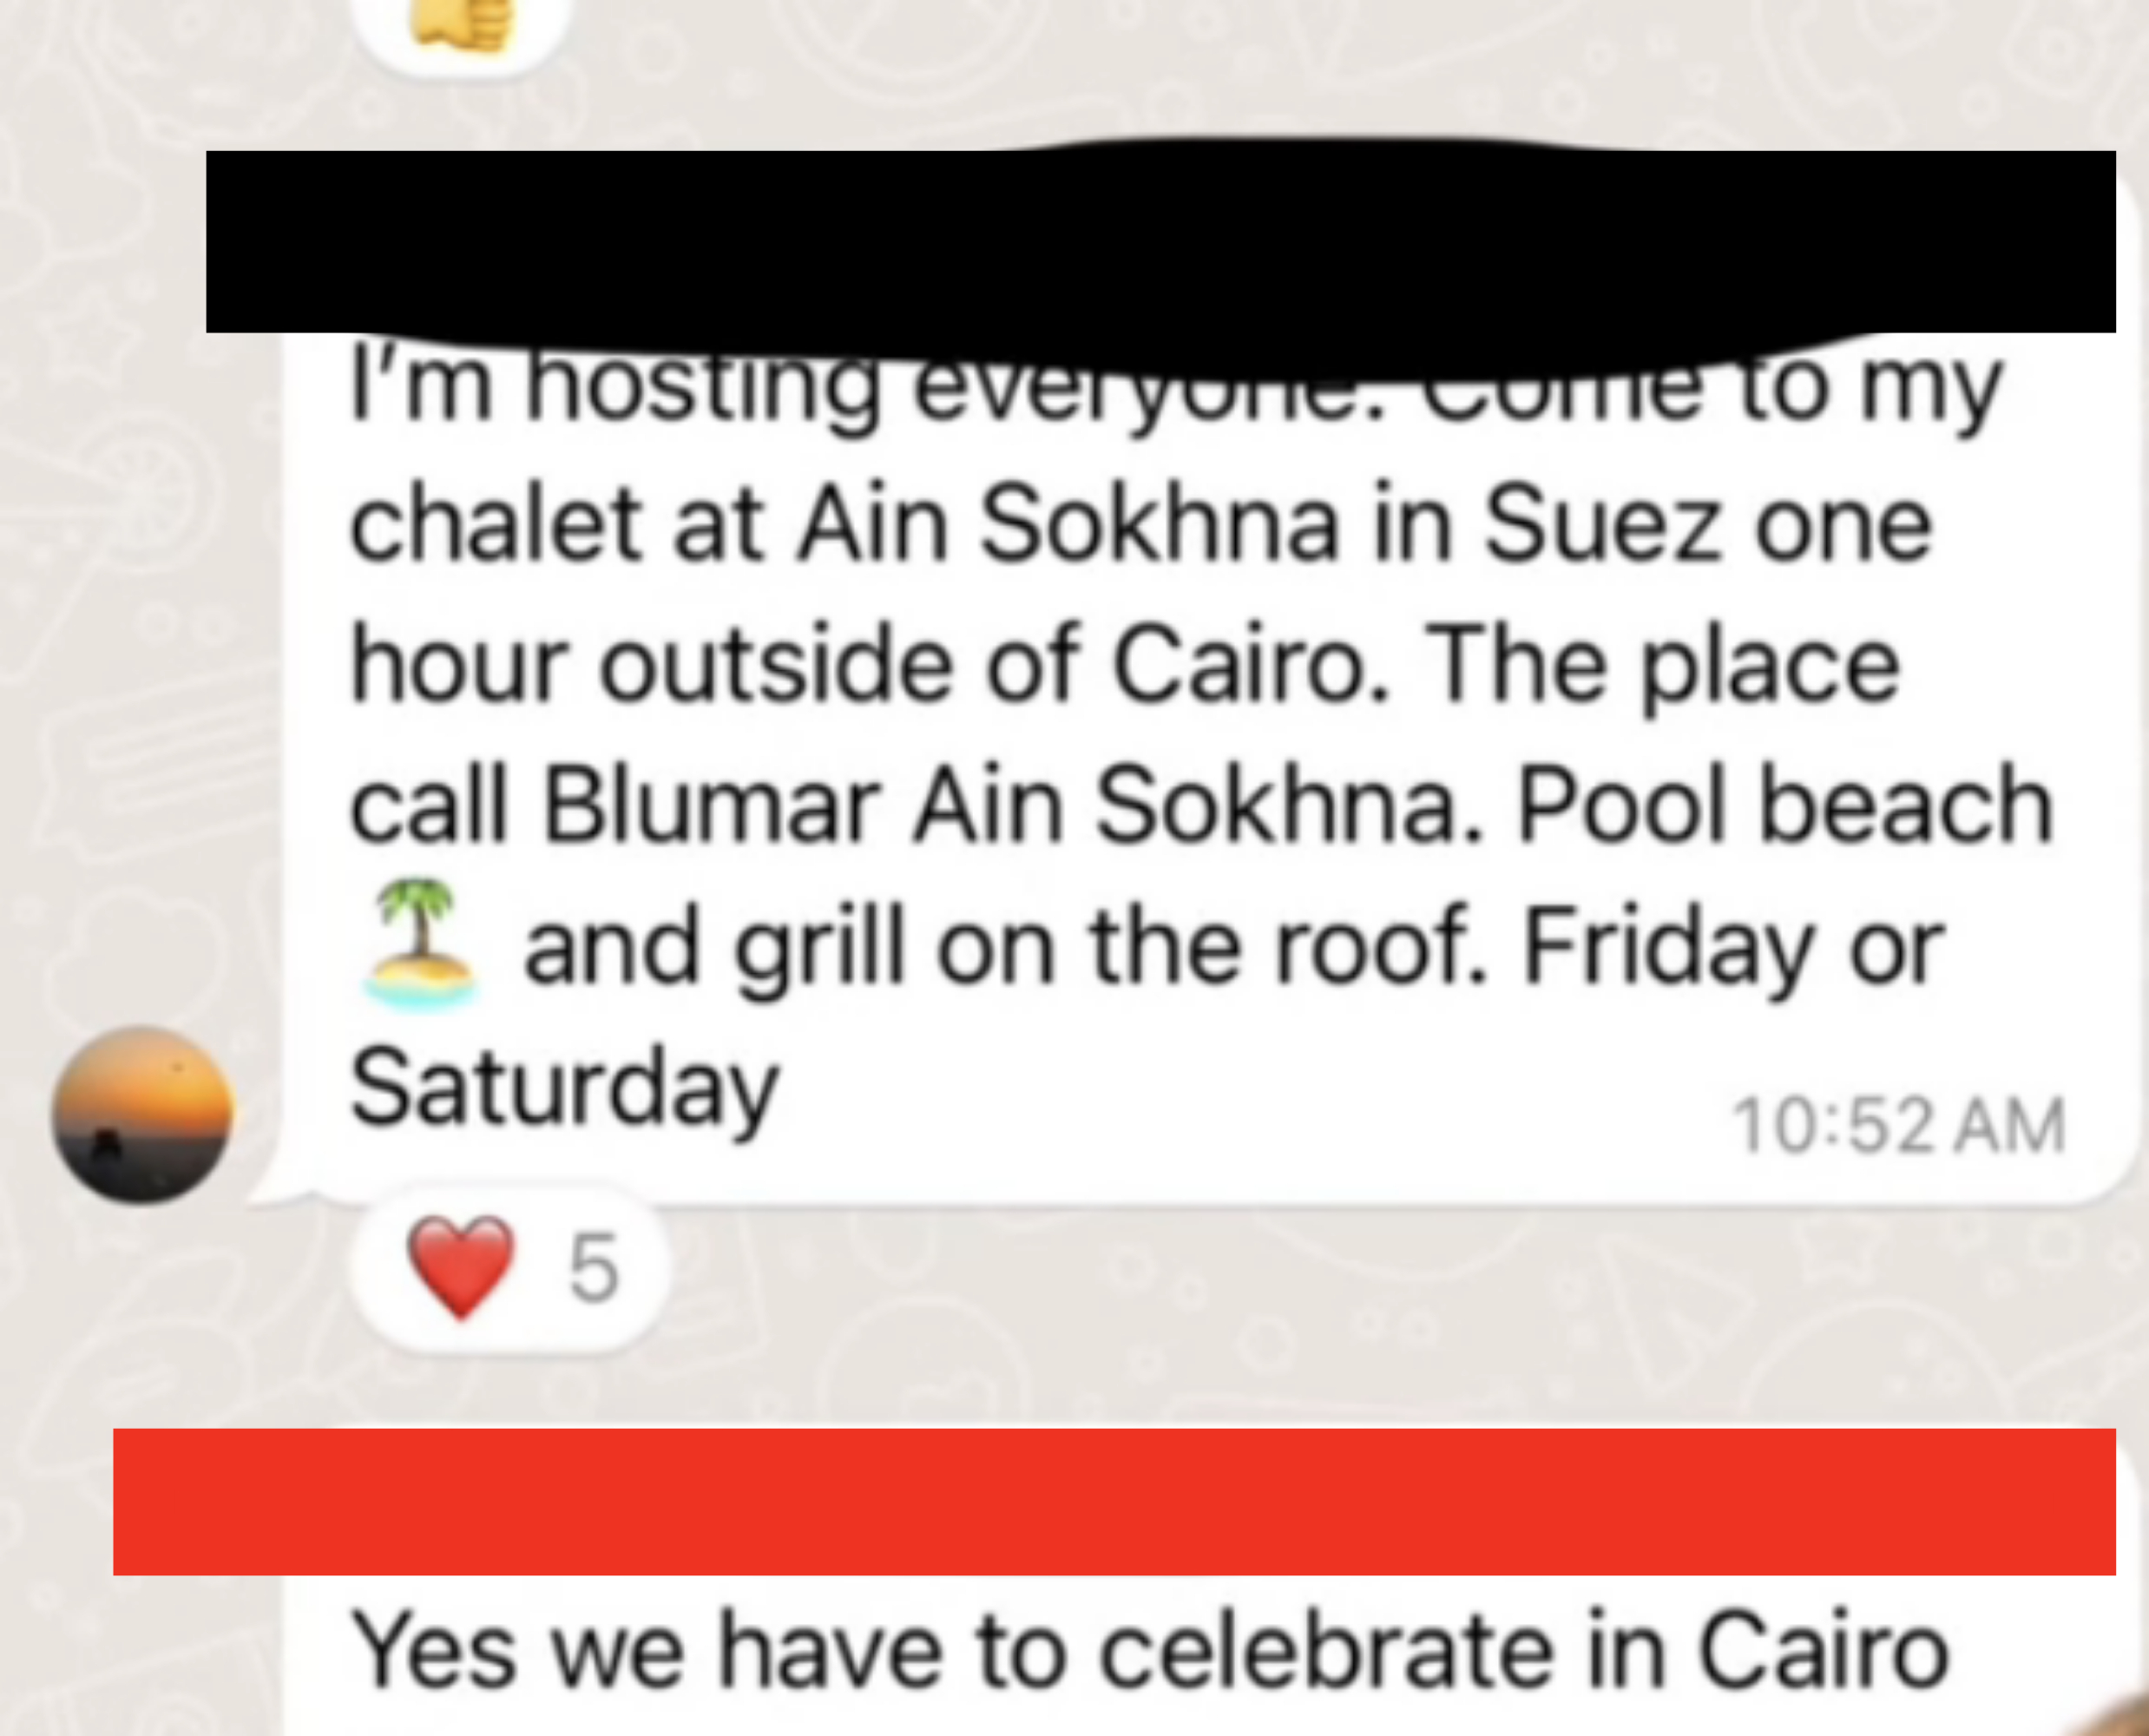 Screenshot of the WhatsApp chat